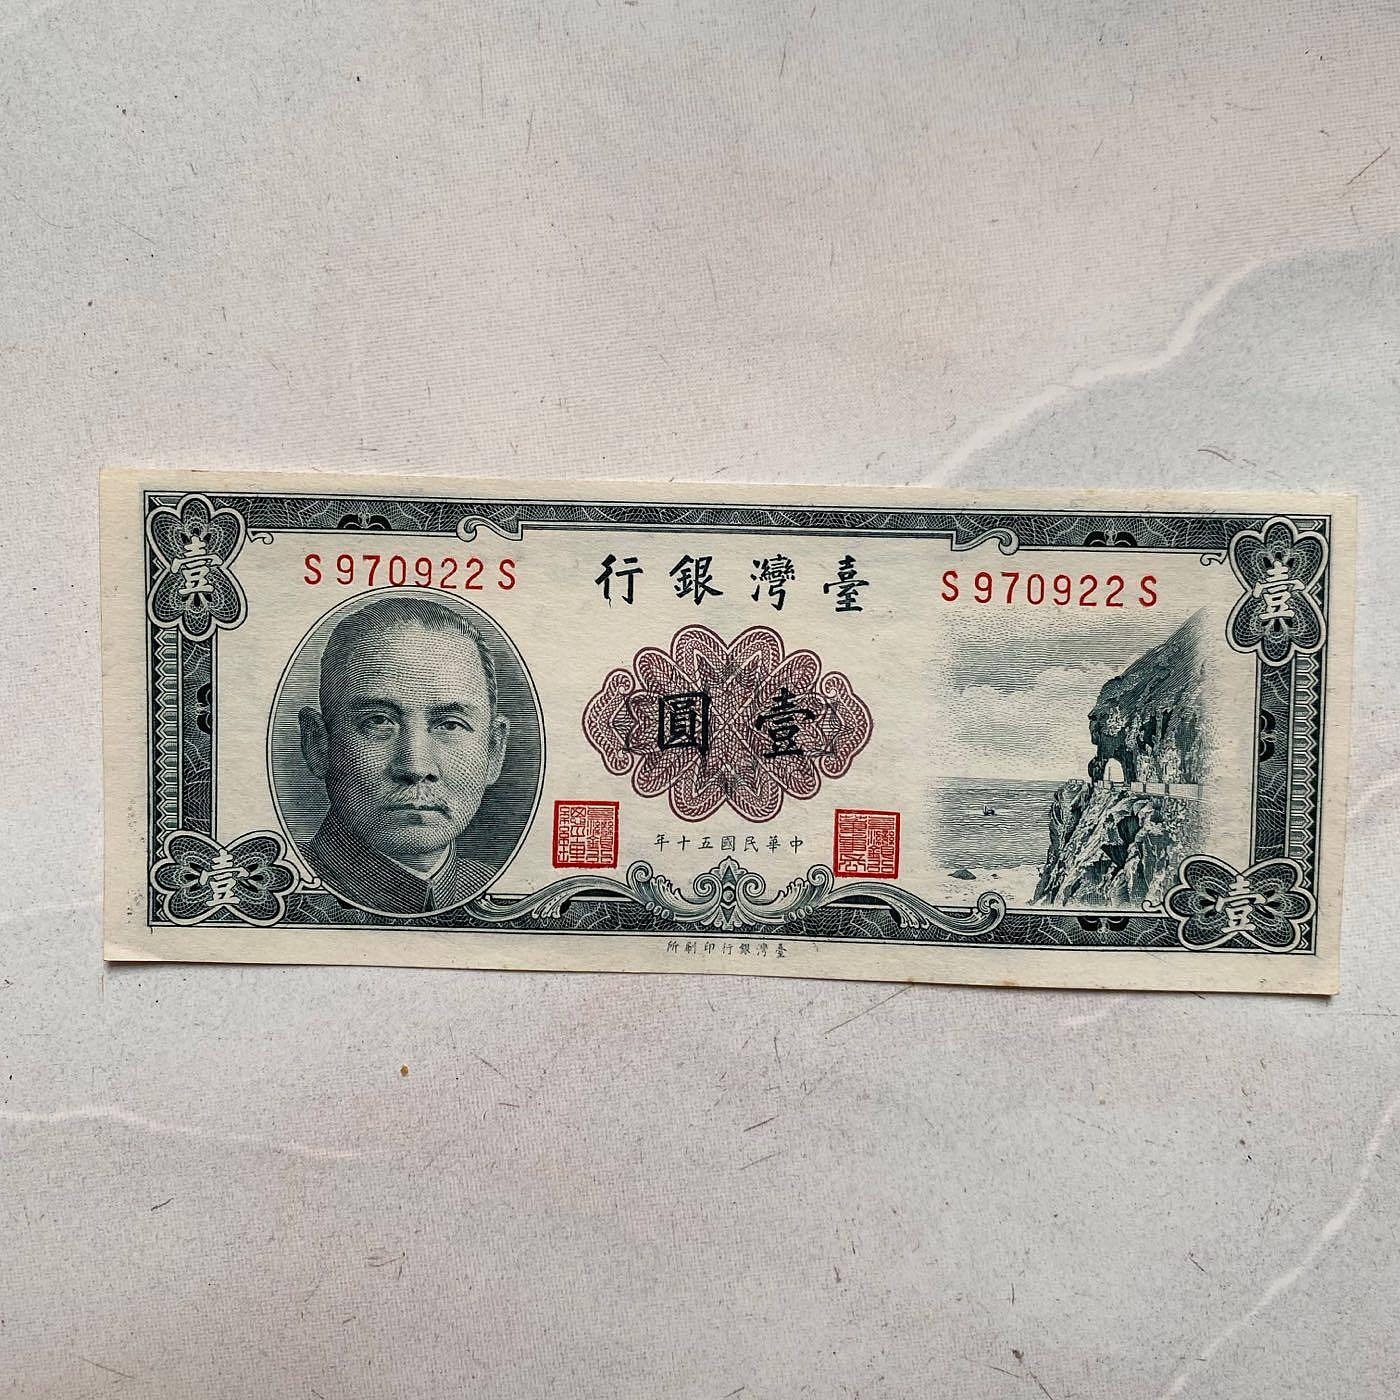 台幣 民國50年印刷 一元 壹圓 連號真鈔 紙幣 紙鈔 清水斷涯